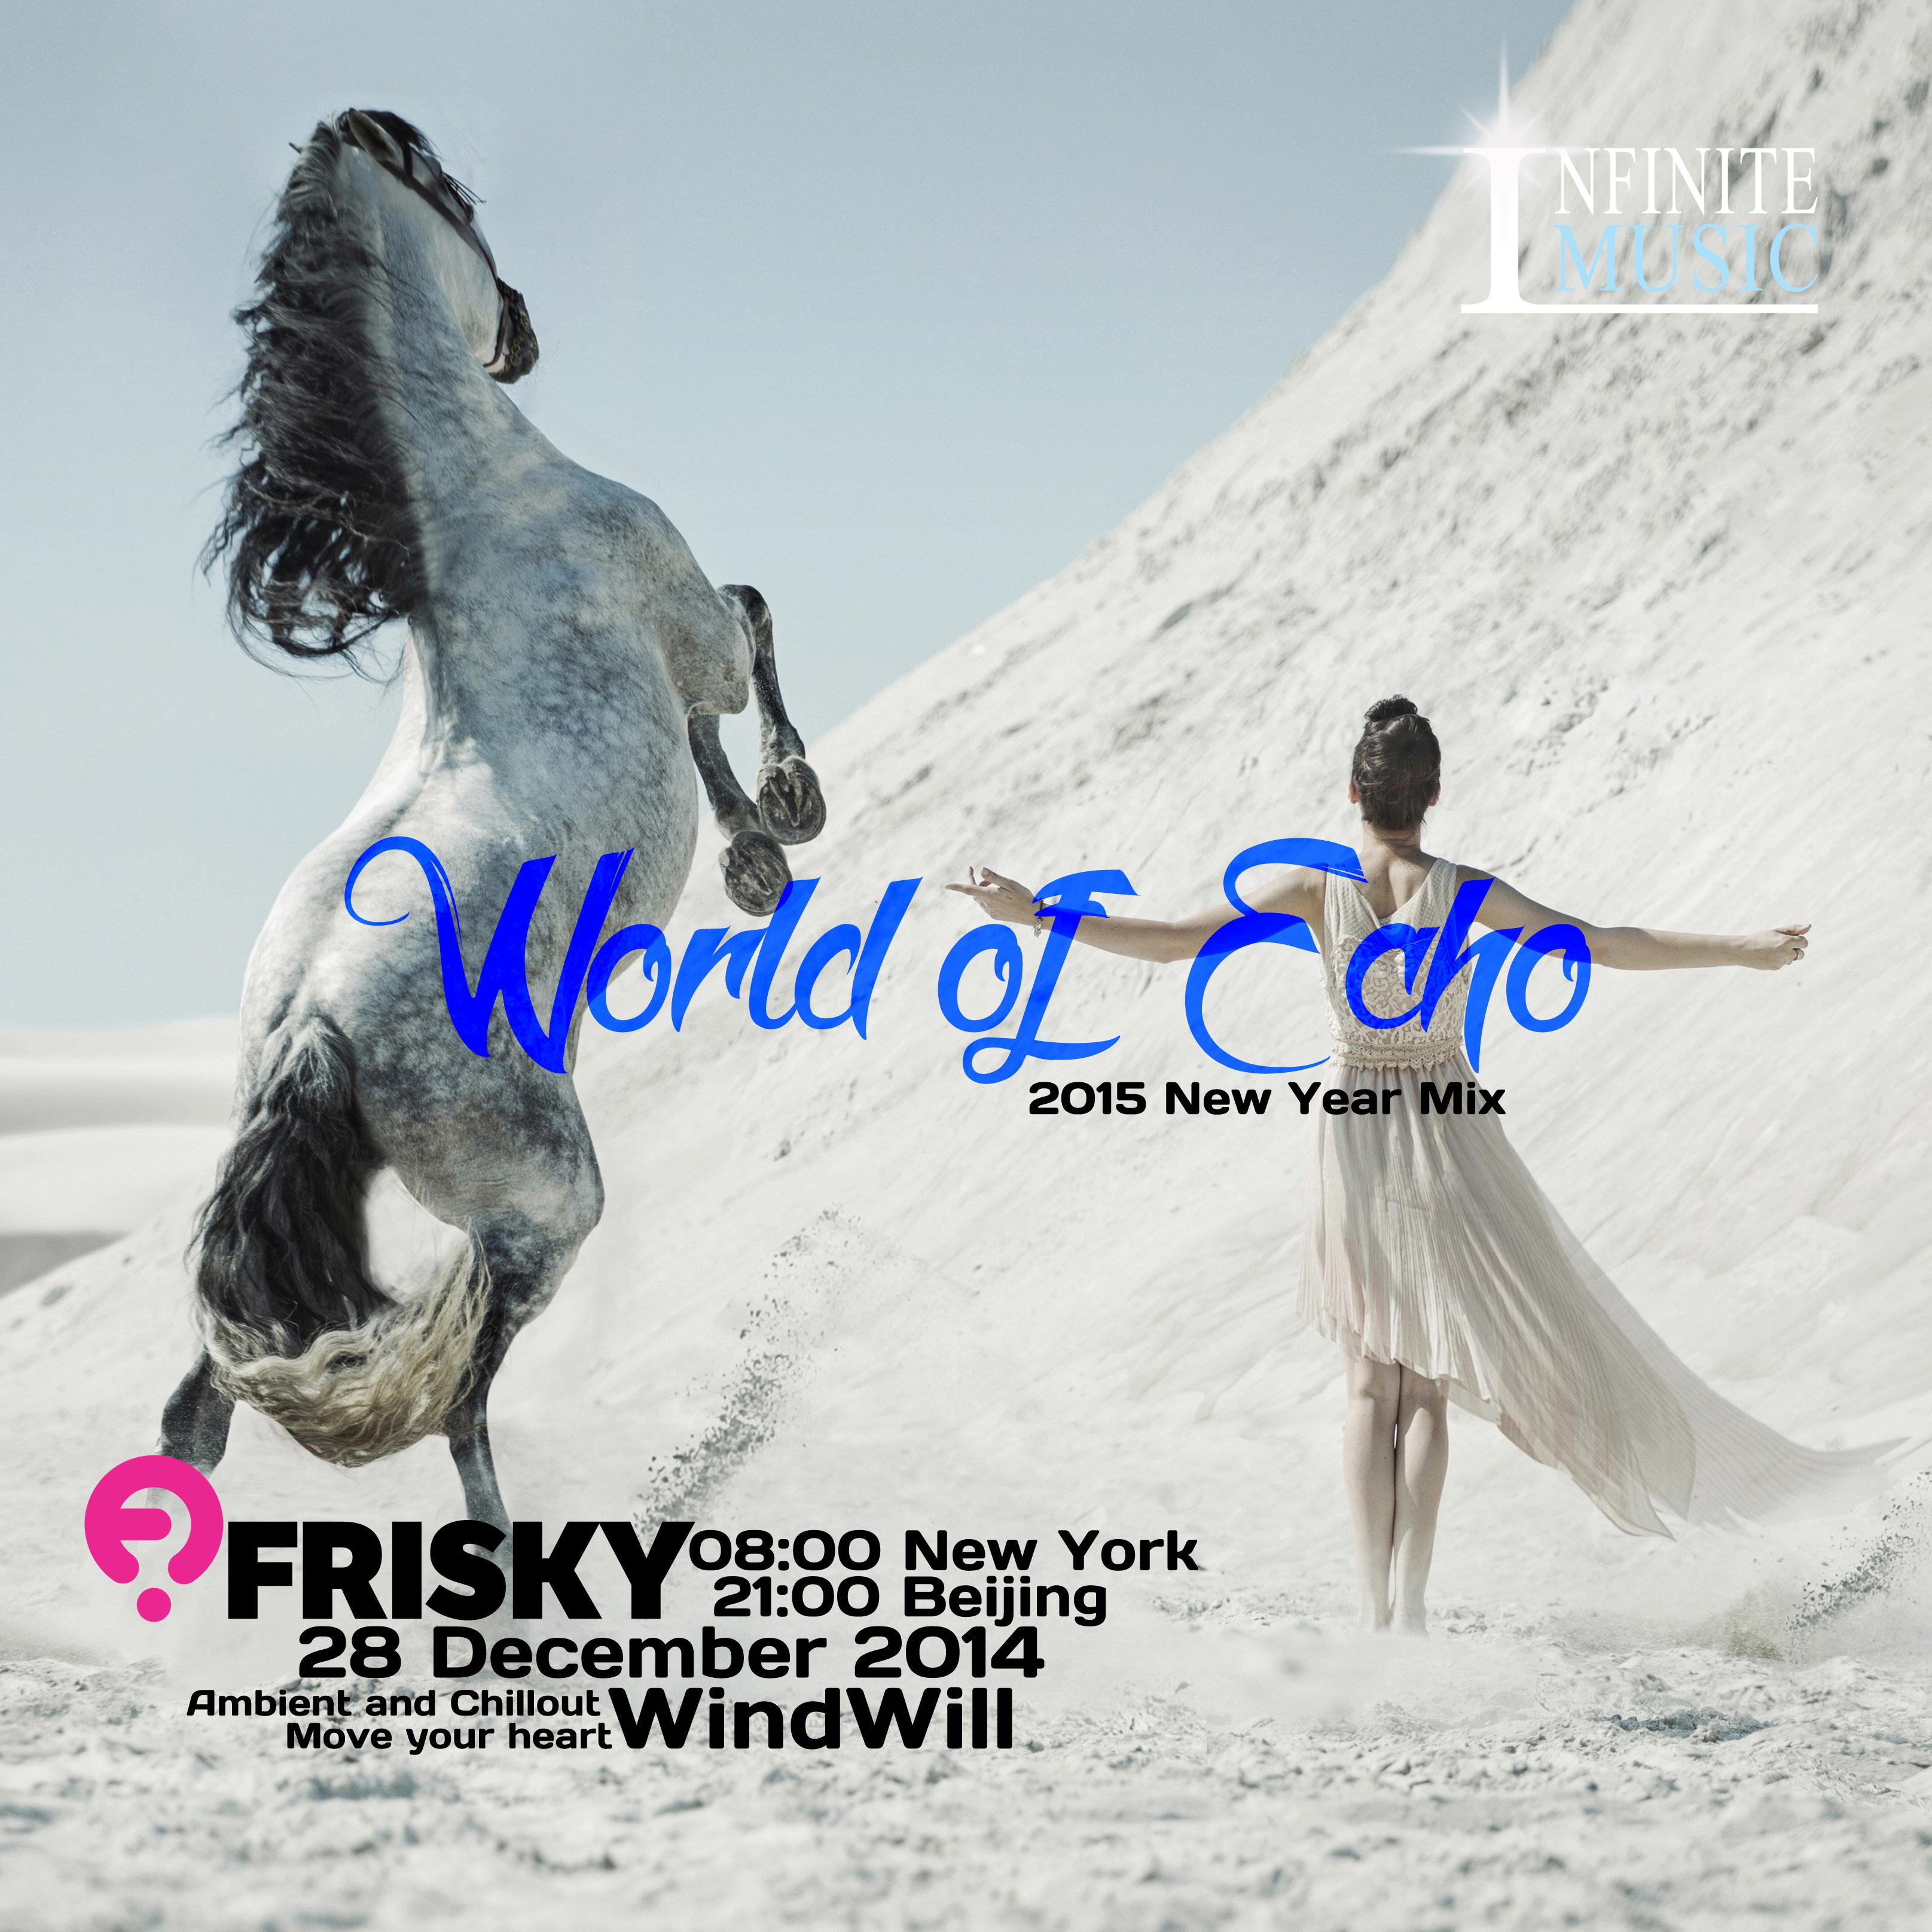 World of Echo 2015 New Year Mix wan zheng xiu fu ban